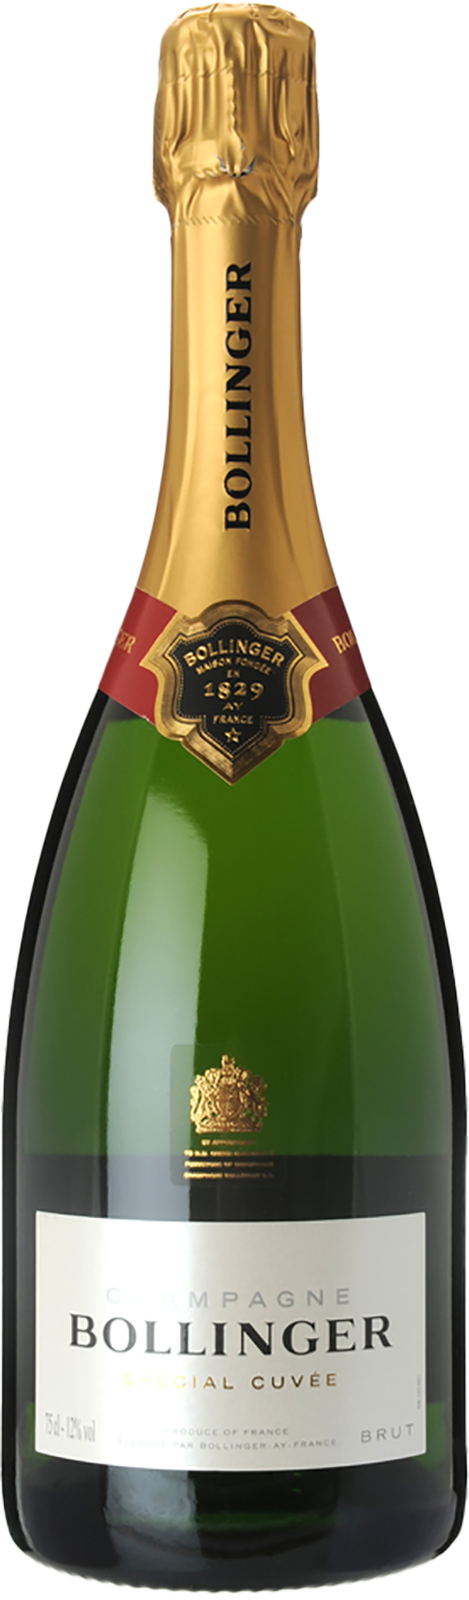 NV-Bollinger Champagne Brut